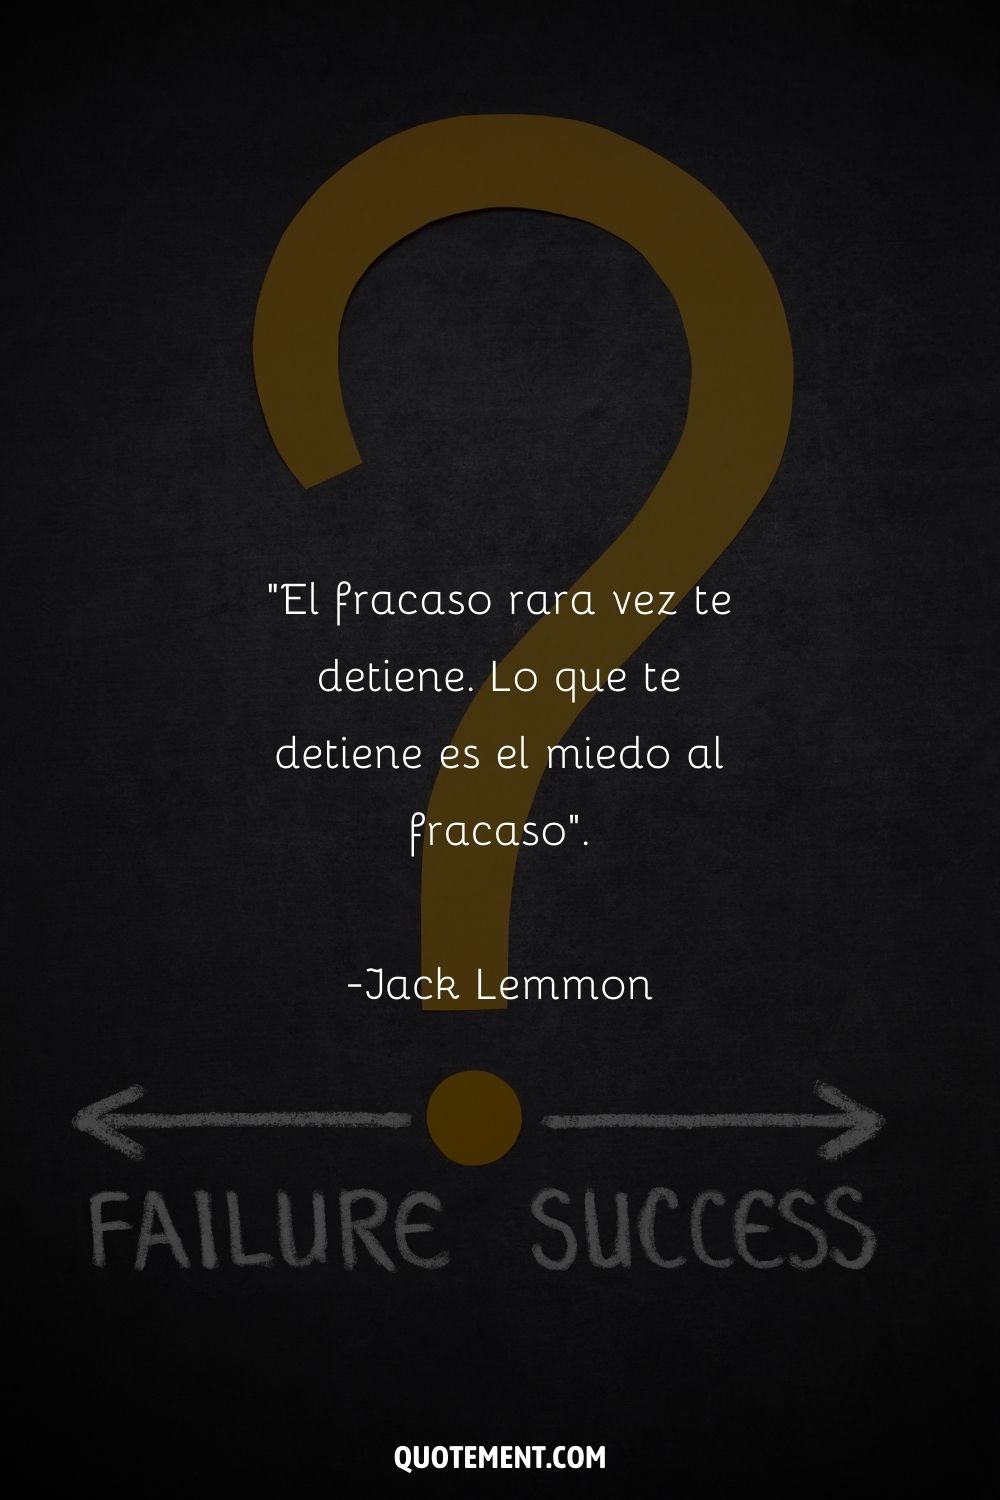 "El fracaso rara vez te detiene. Lo que te detiene es el miedo al fracaso". - Jack Lemmon